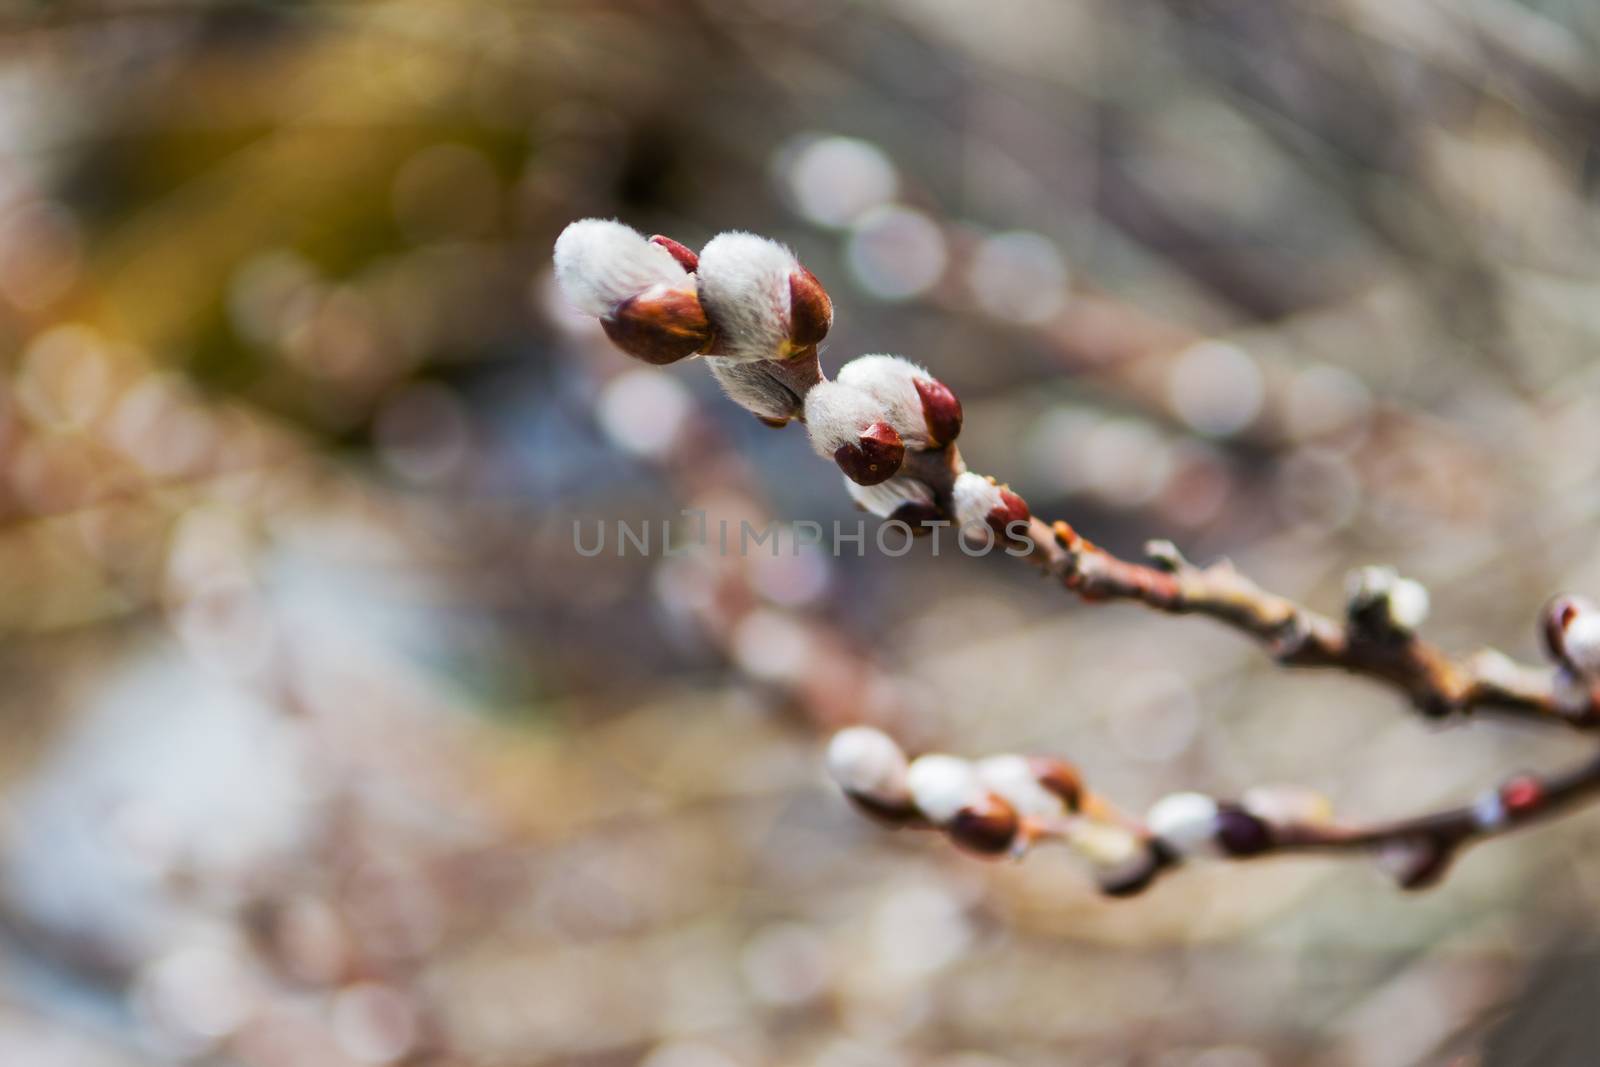 Spring awakening of nature by ben44